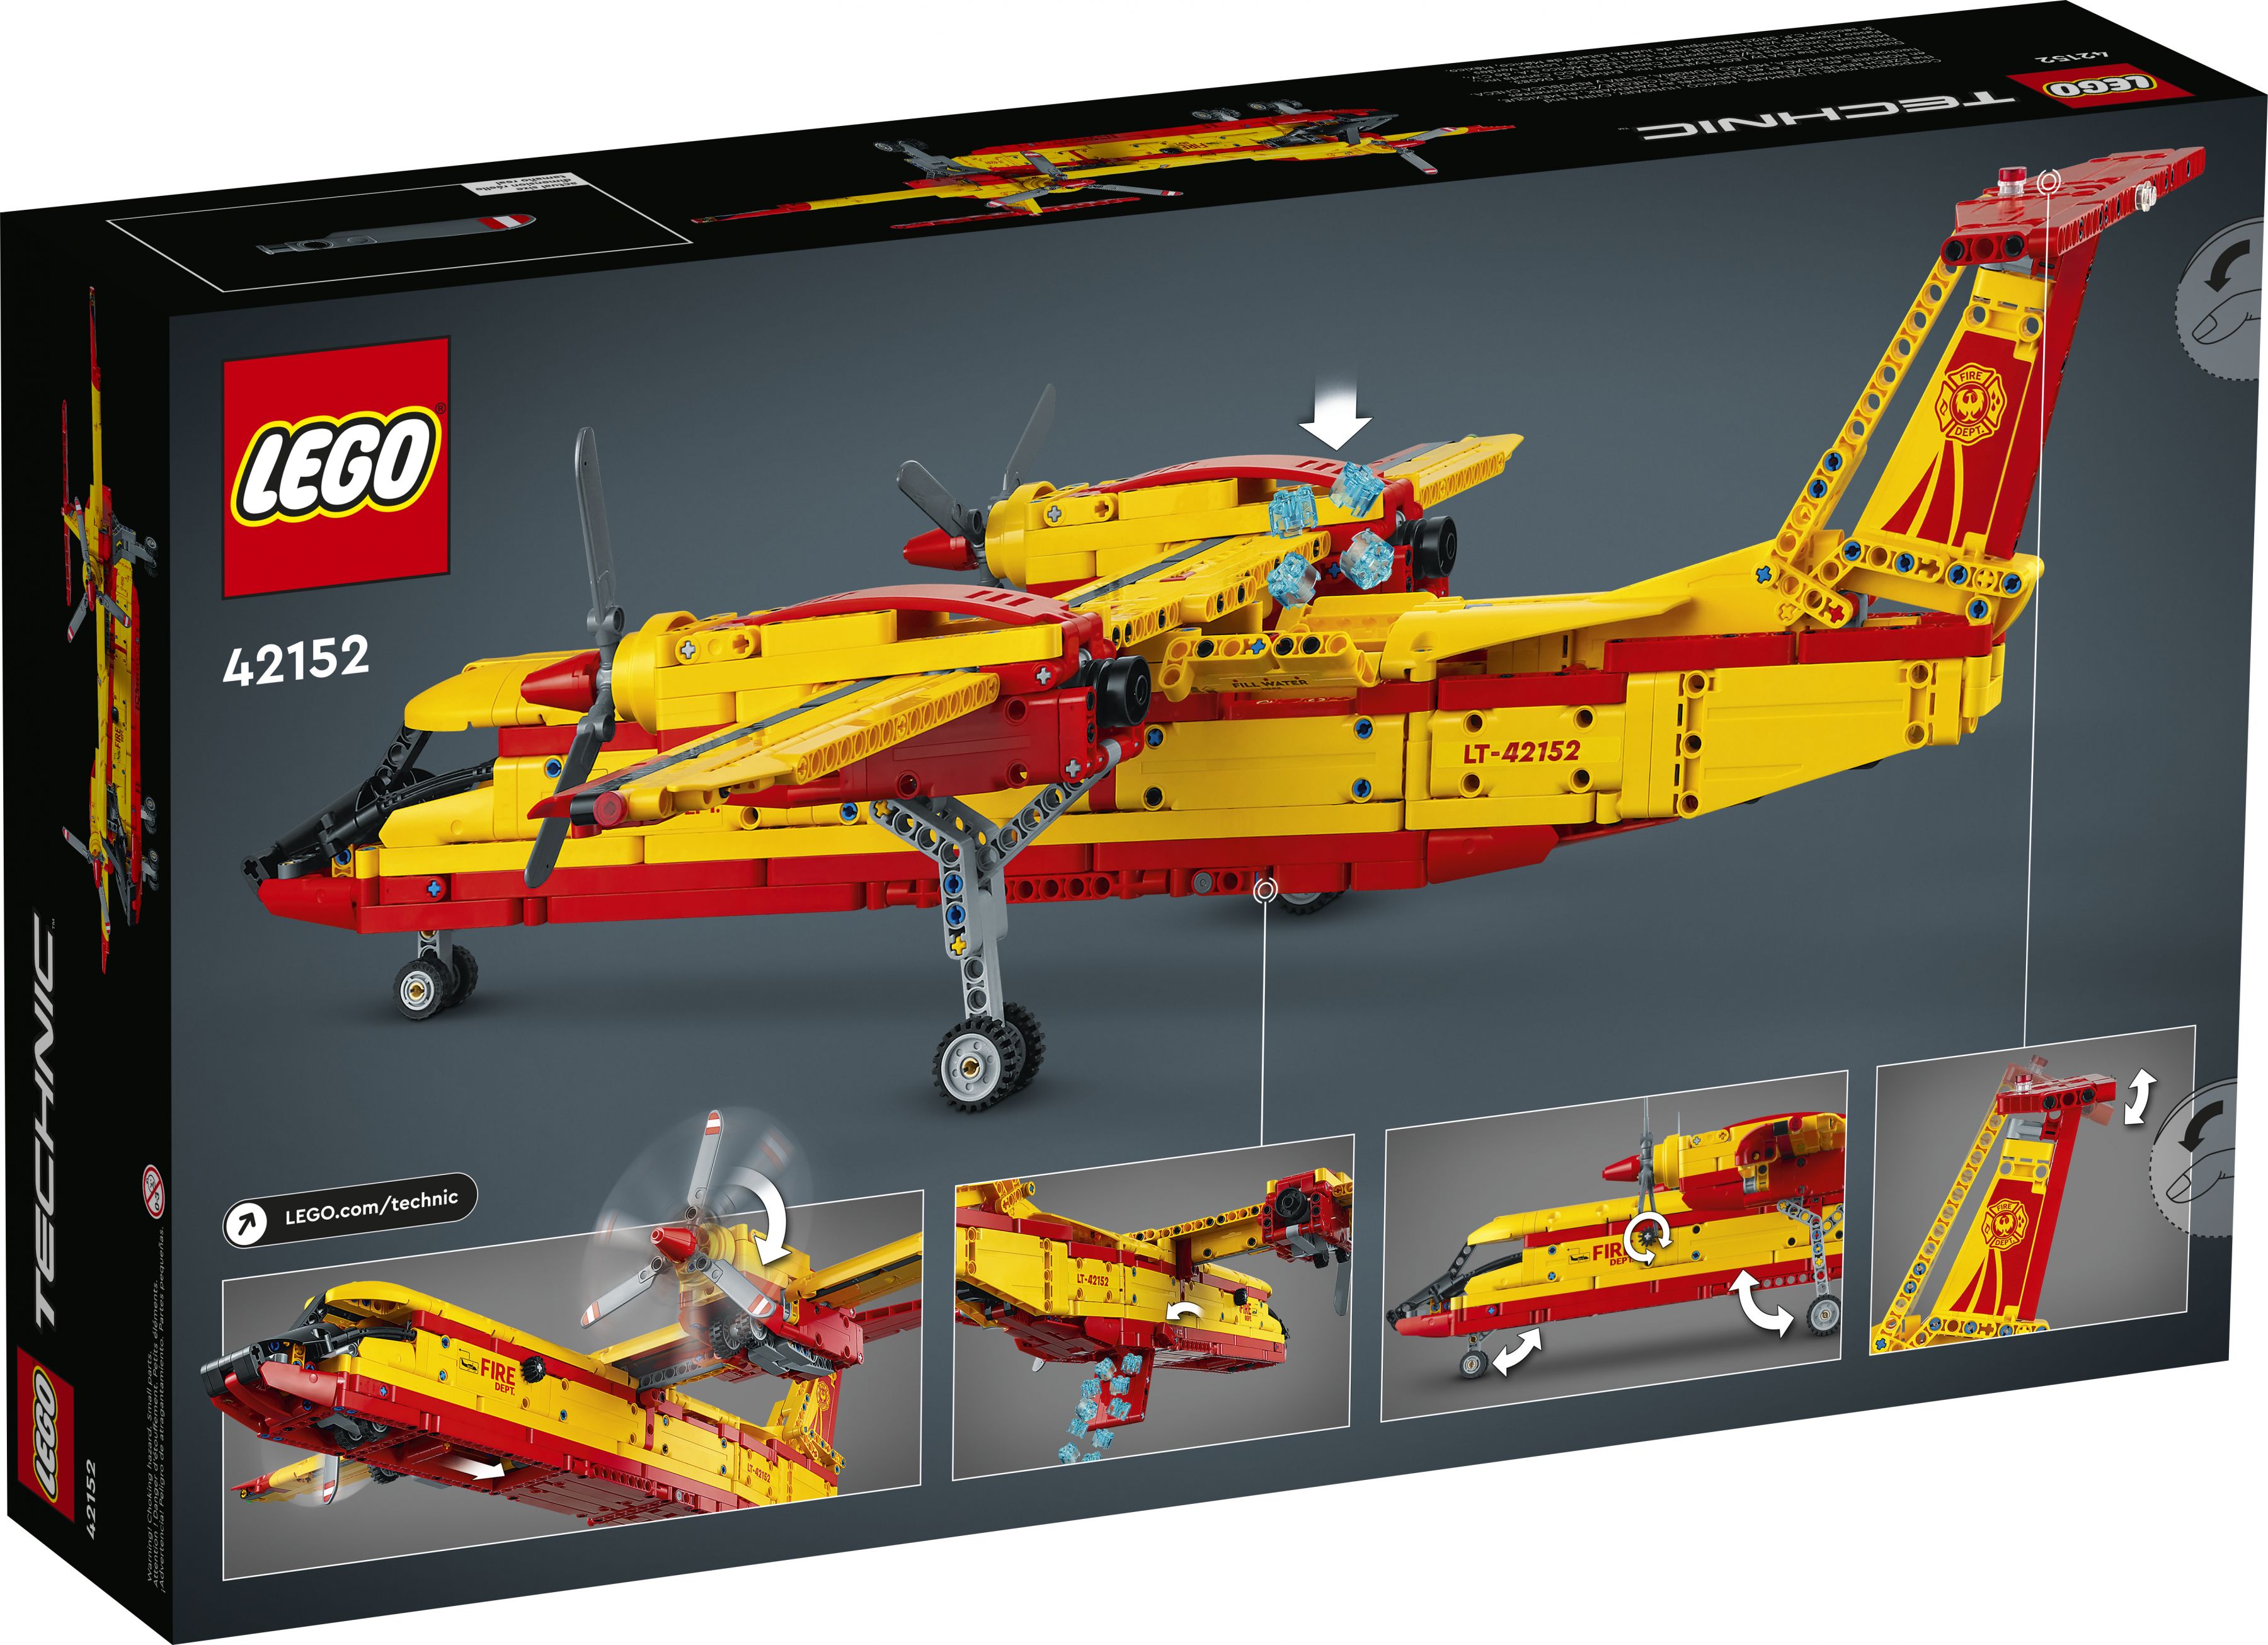 LEGO Technic 42152 Löschflugzeug LEGO_42152_Box5_v39.jpg